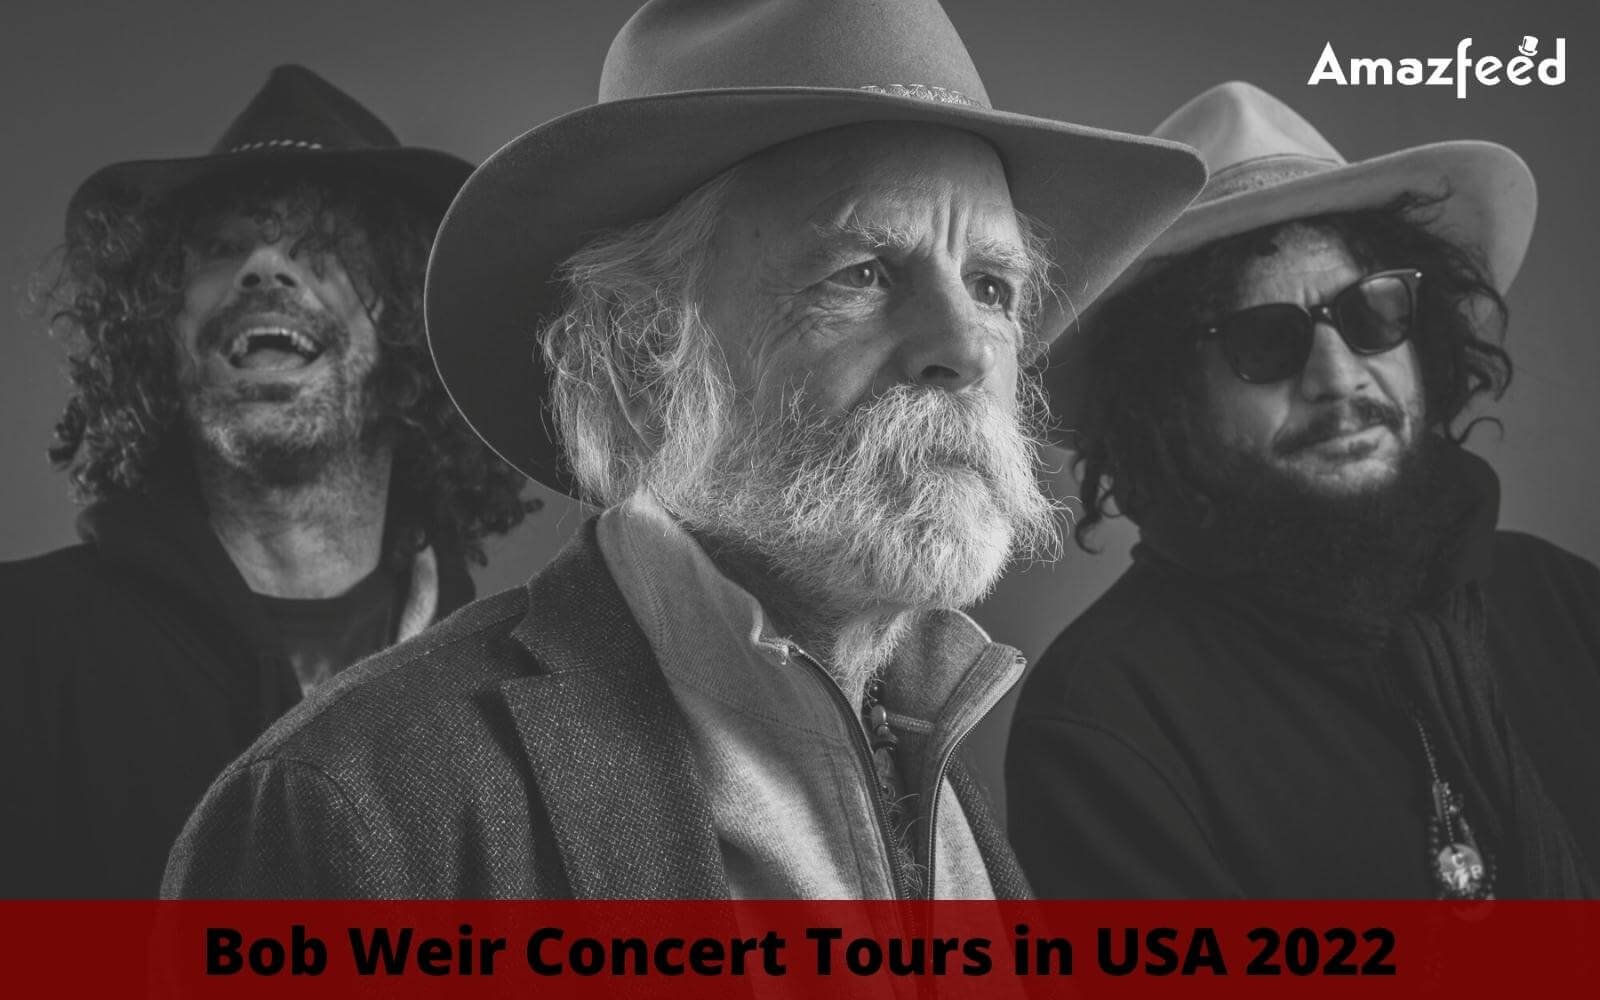 Bob Weir Setlist 2022, Concert Tour Dates in 2022 | USA | Set List, Band Members